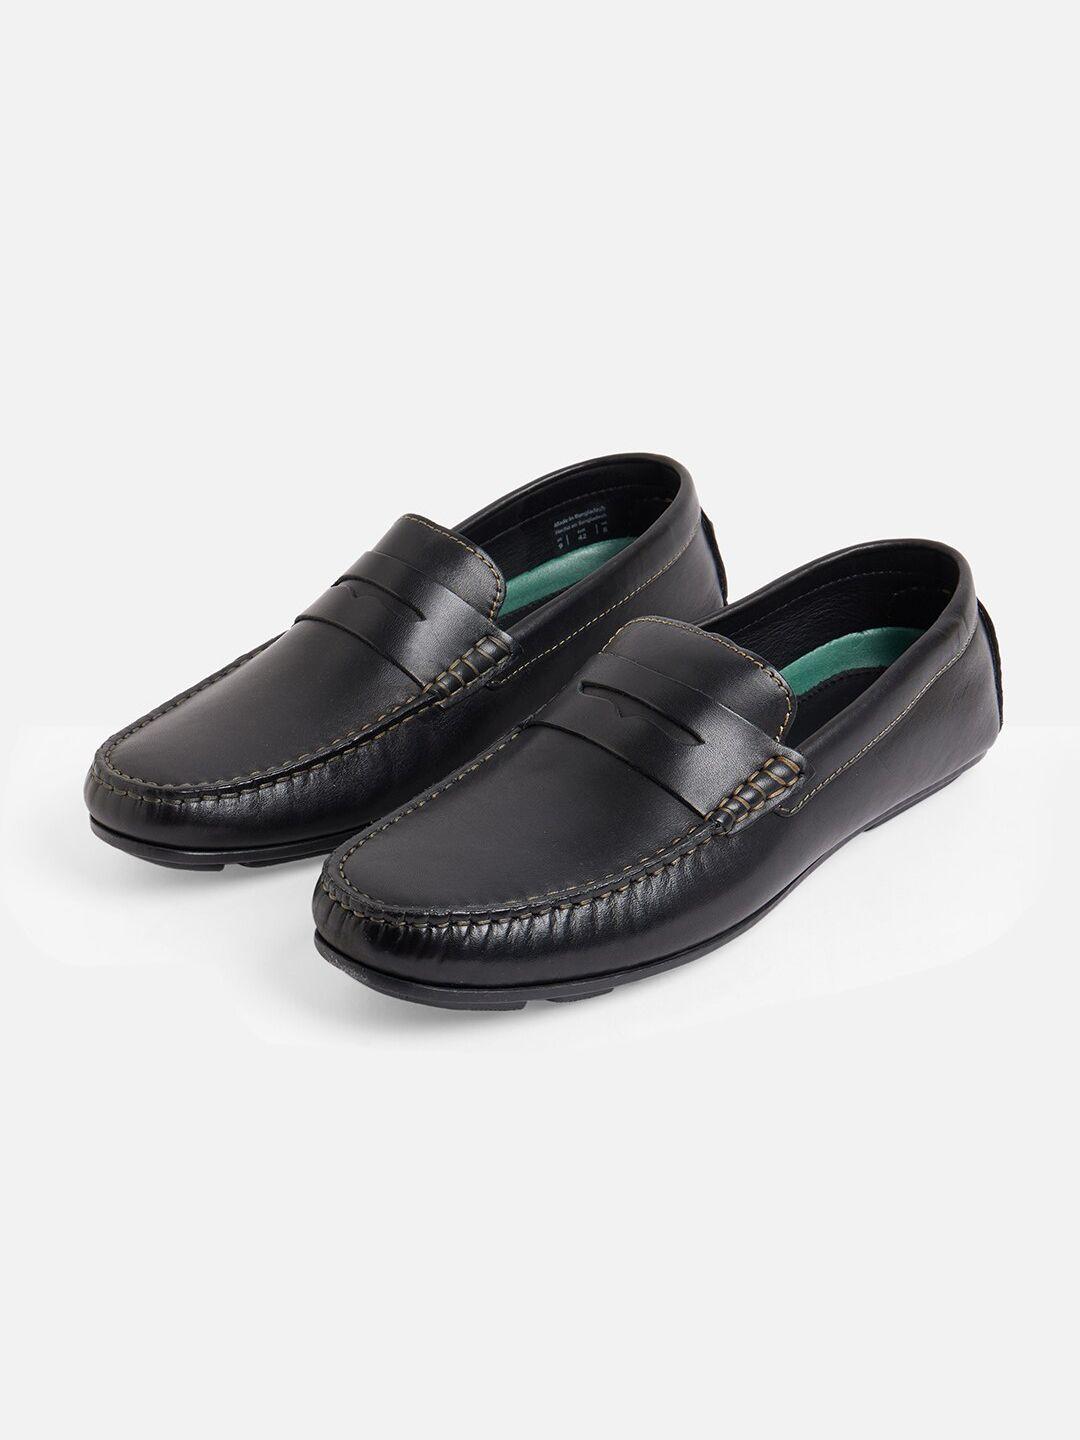 aldo-men-black-leather-formal-loafers